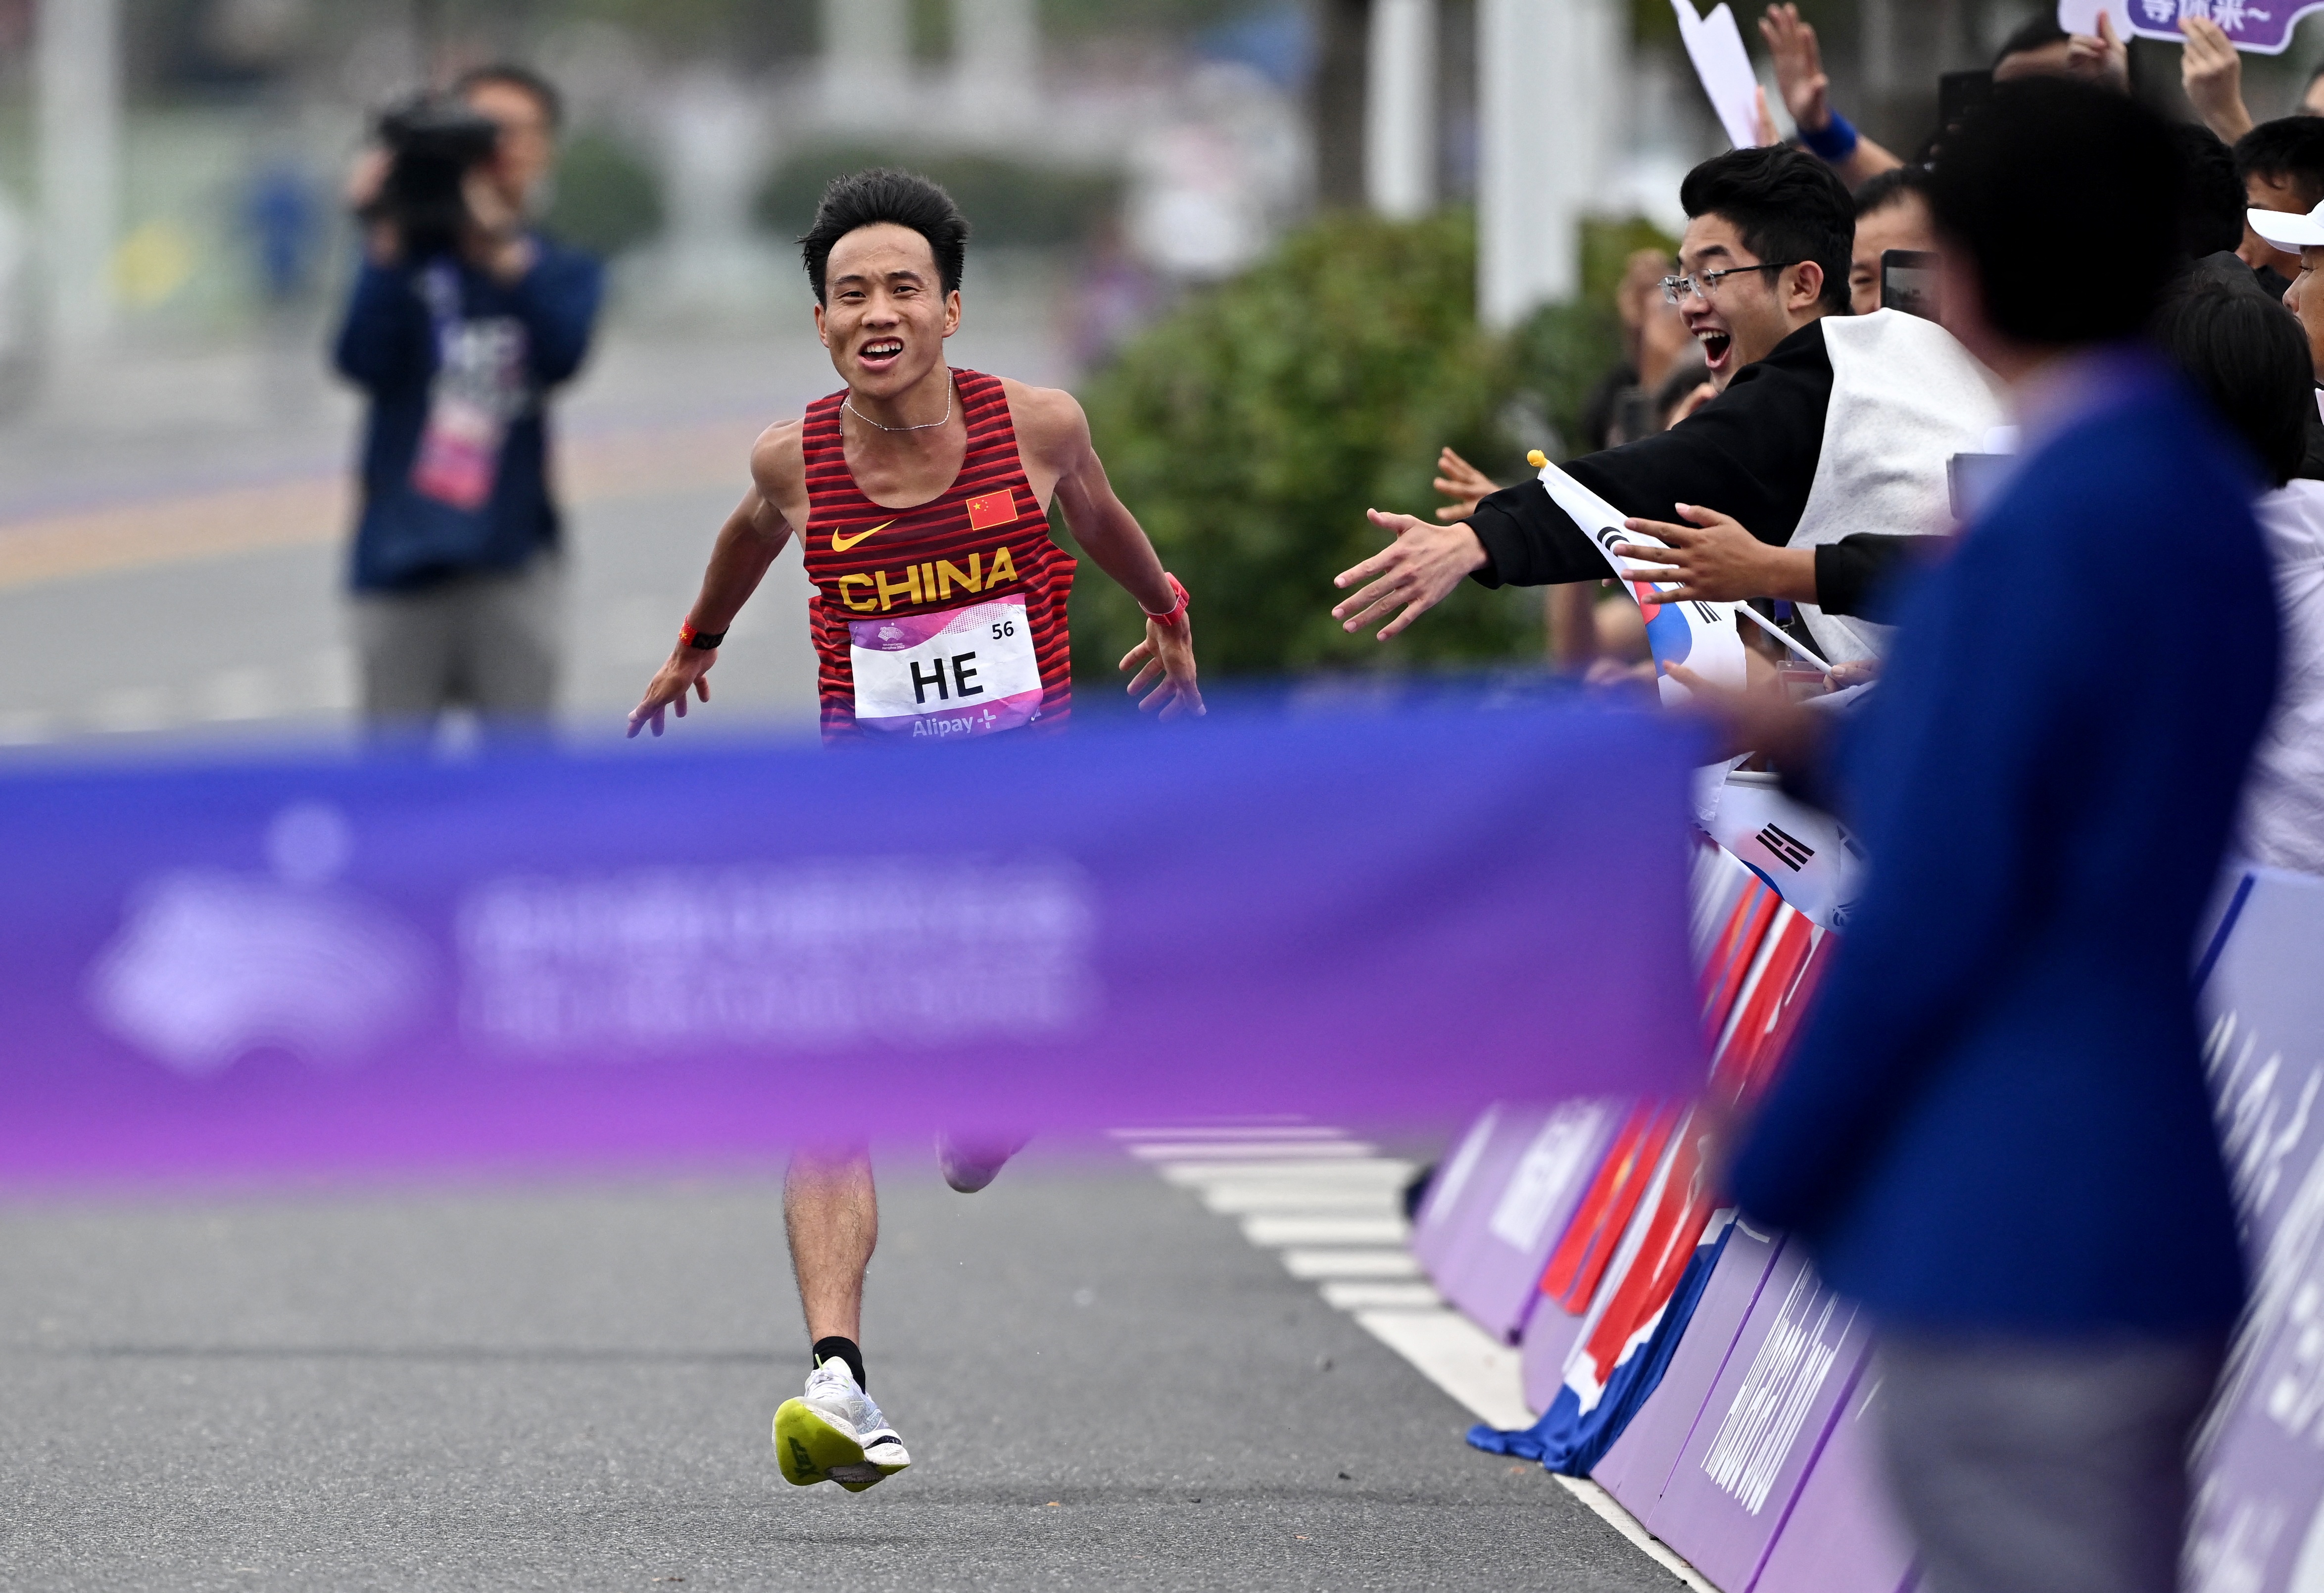 志当存高远无愧梦少年记杭州亚运会男子马拉松冠军何杰